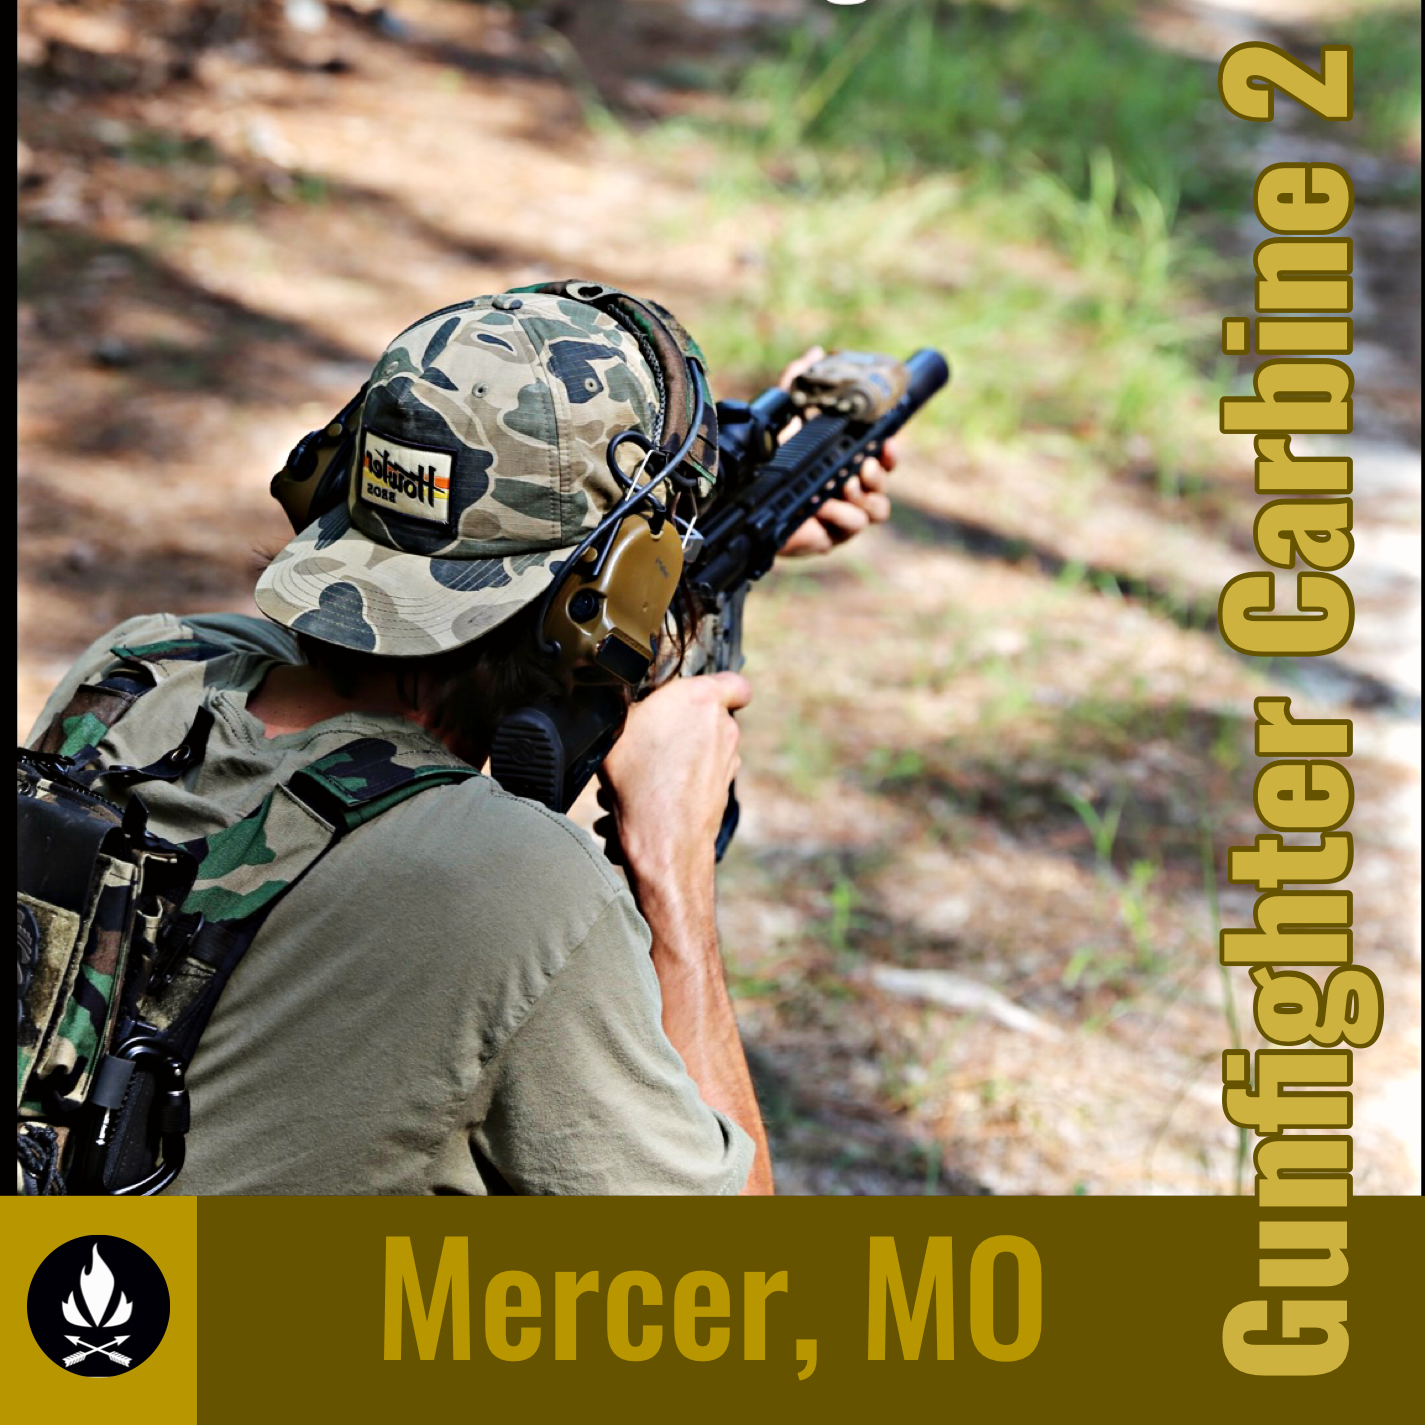 Gunfighter Carbine 2: 19 June 2022 (Mercer, MO)